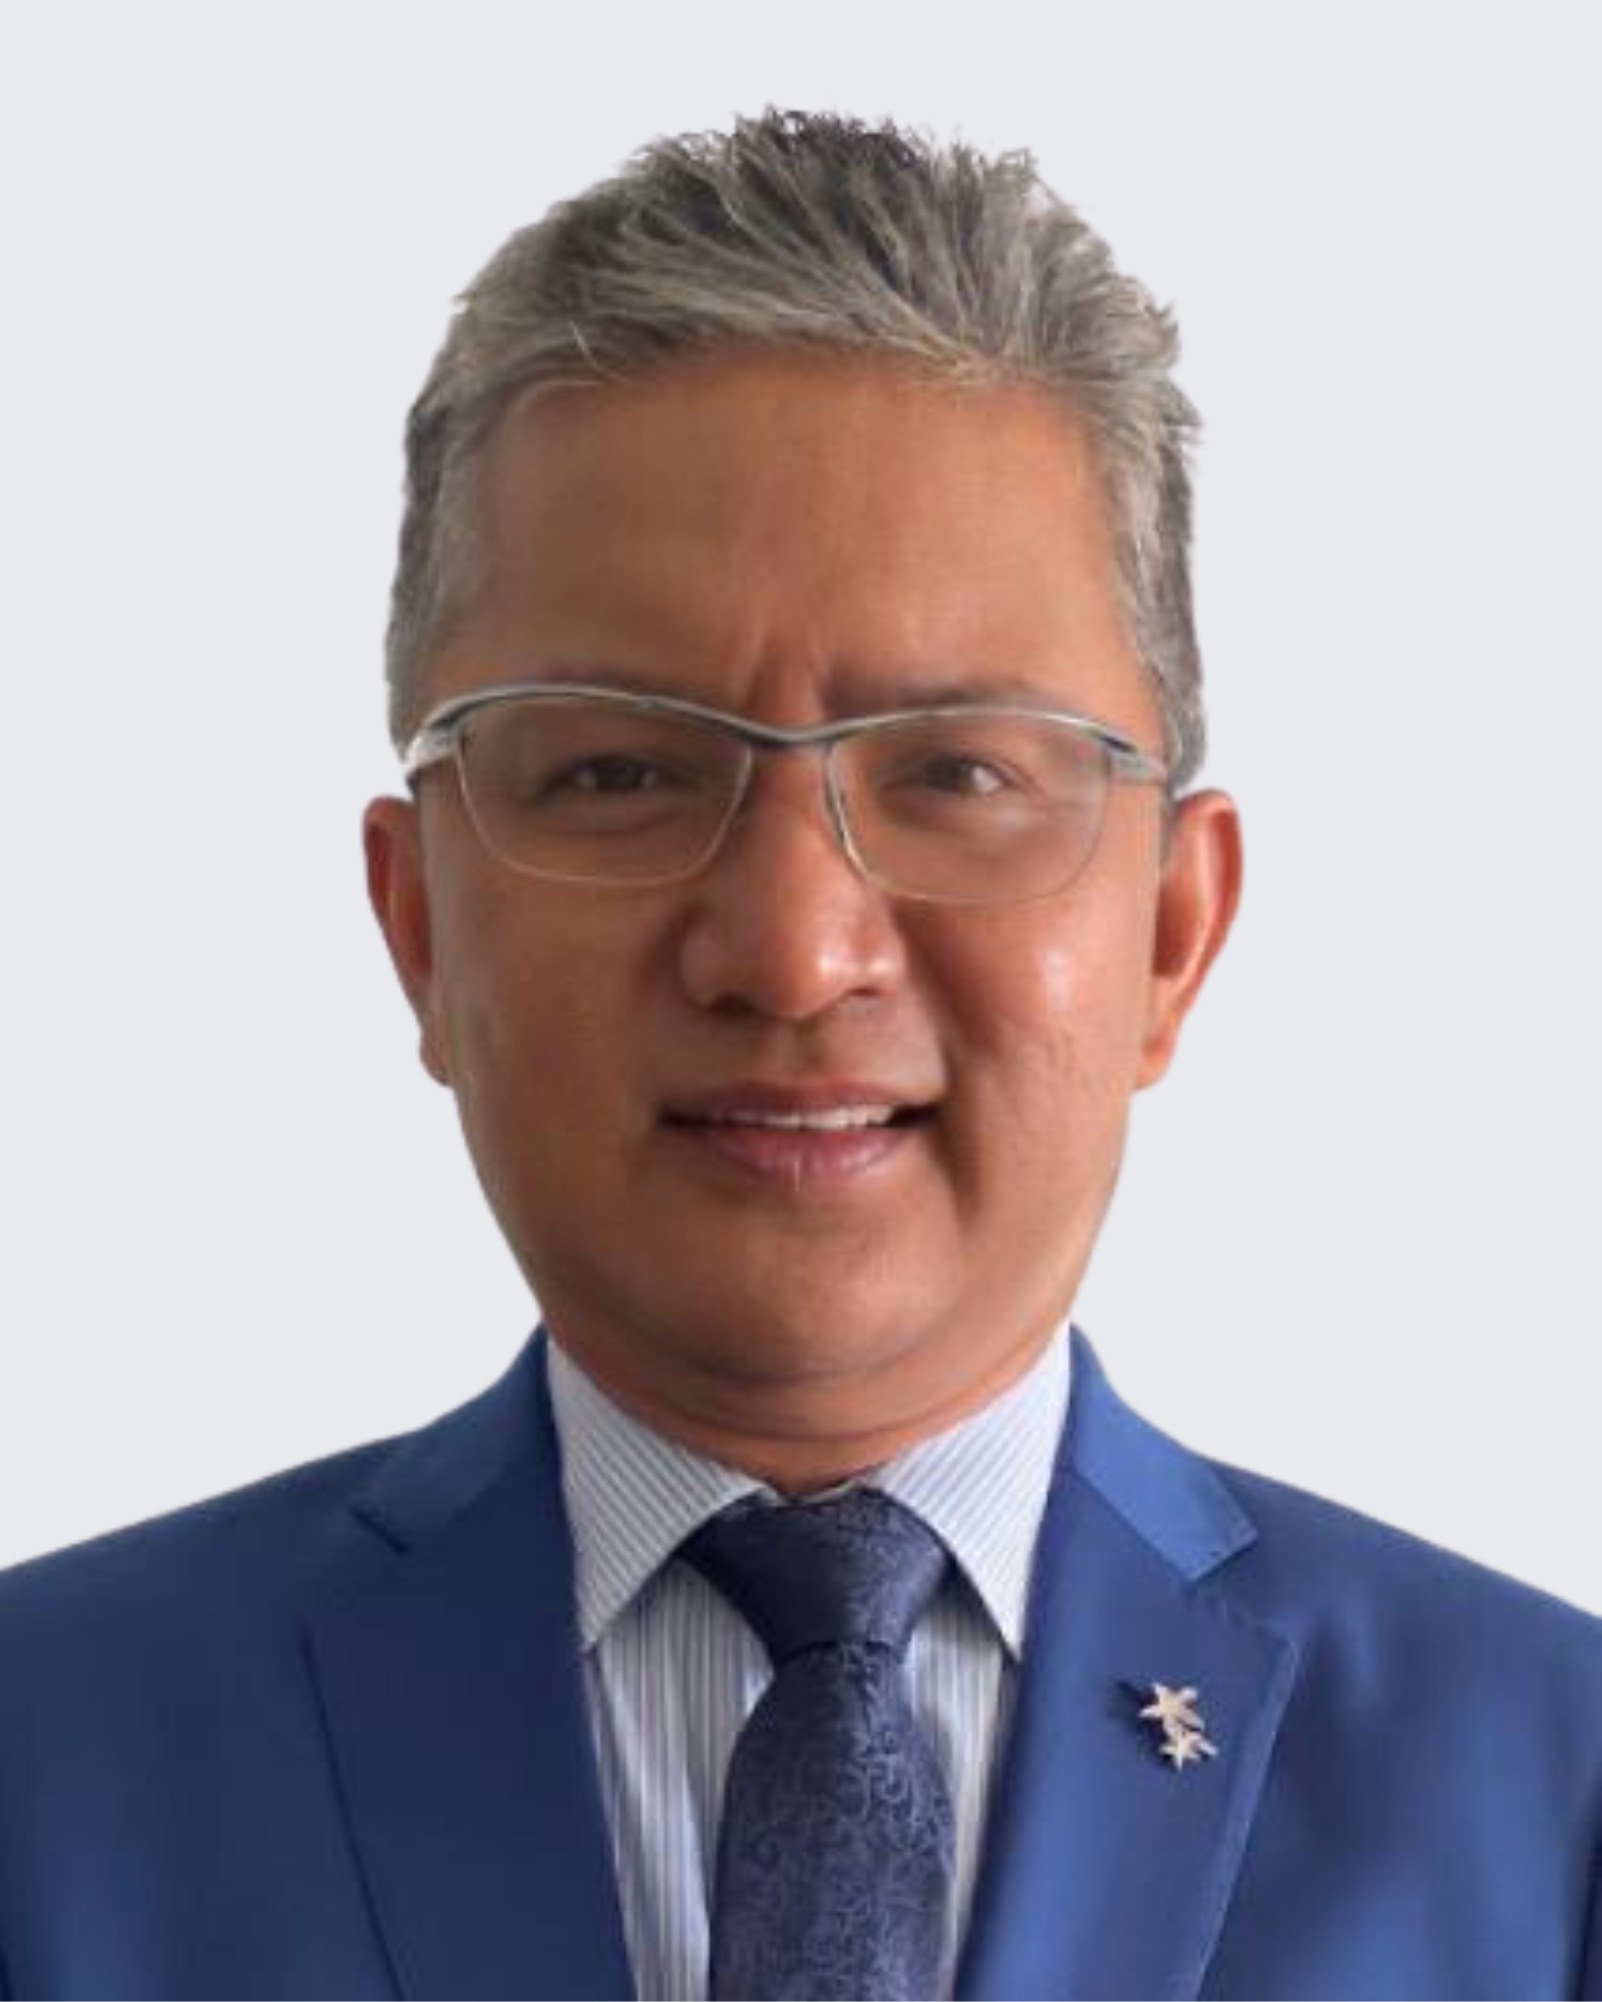 Dr. Kamarul Zaman Haji Yusoff